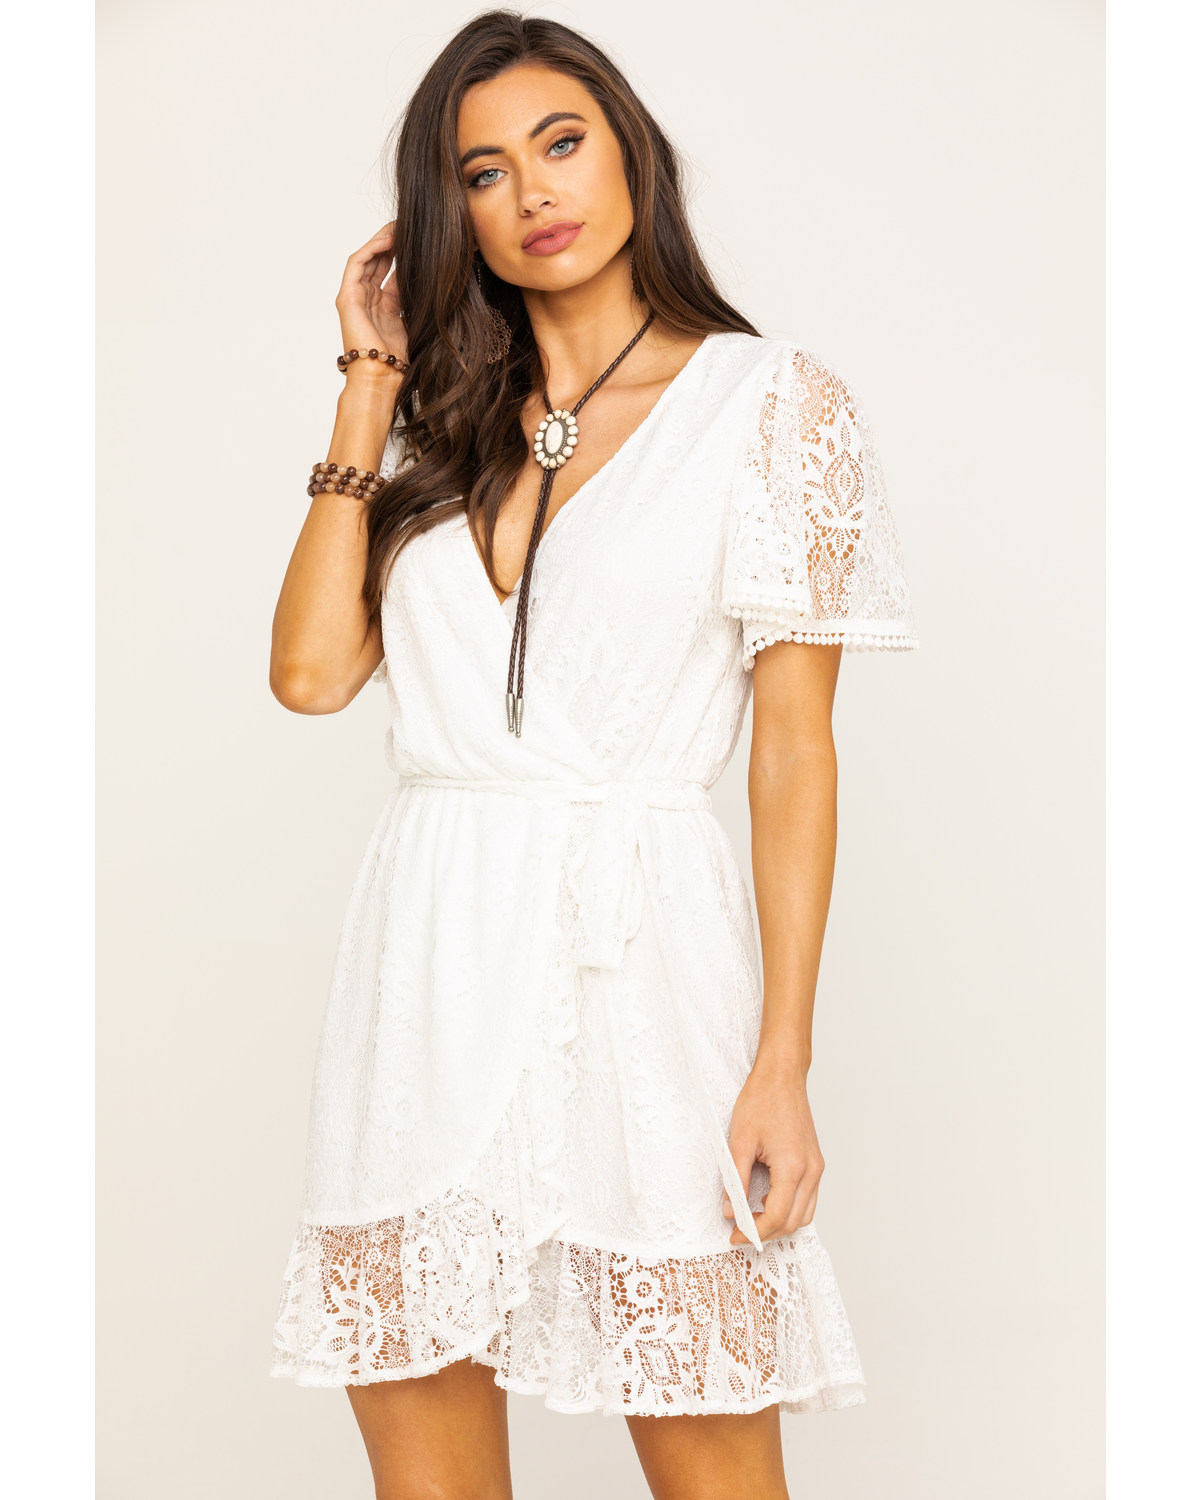 White Lace Wrap Dress - Plus Size 2020